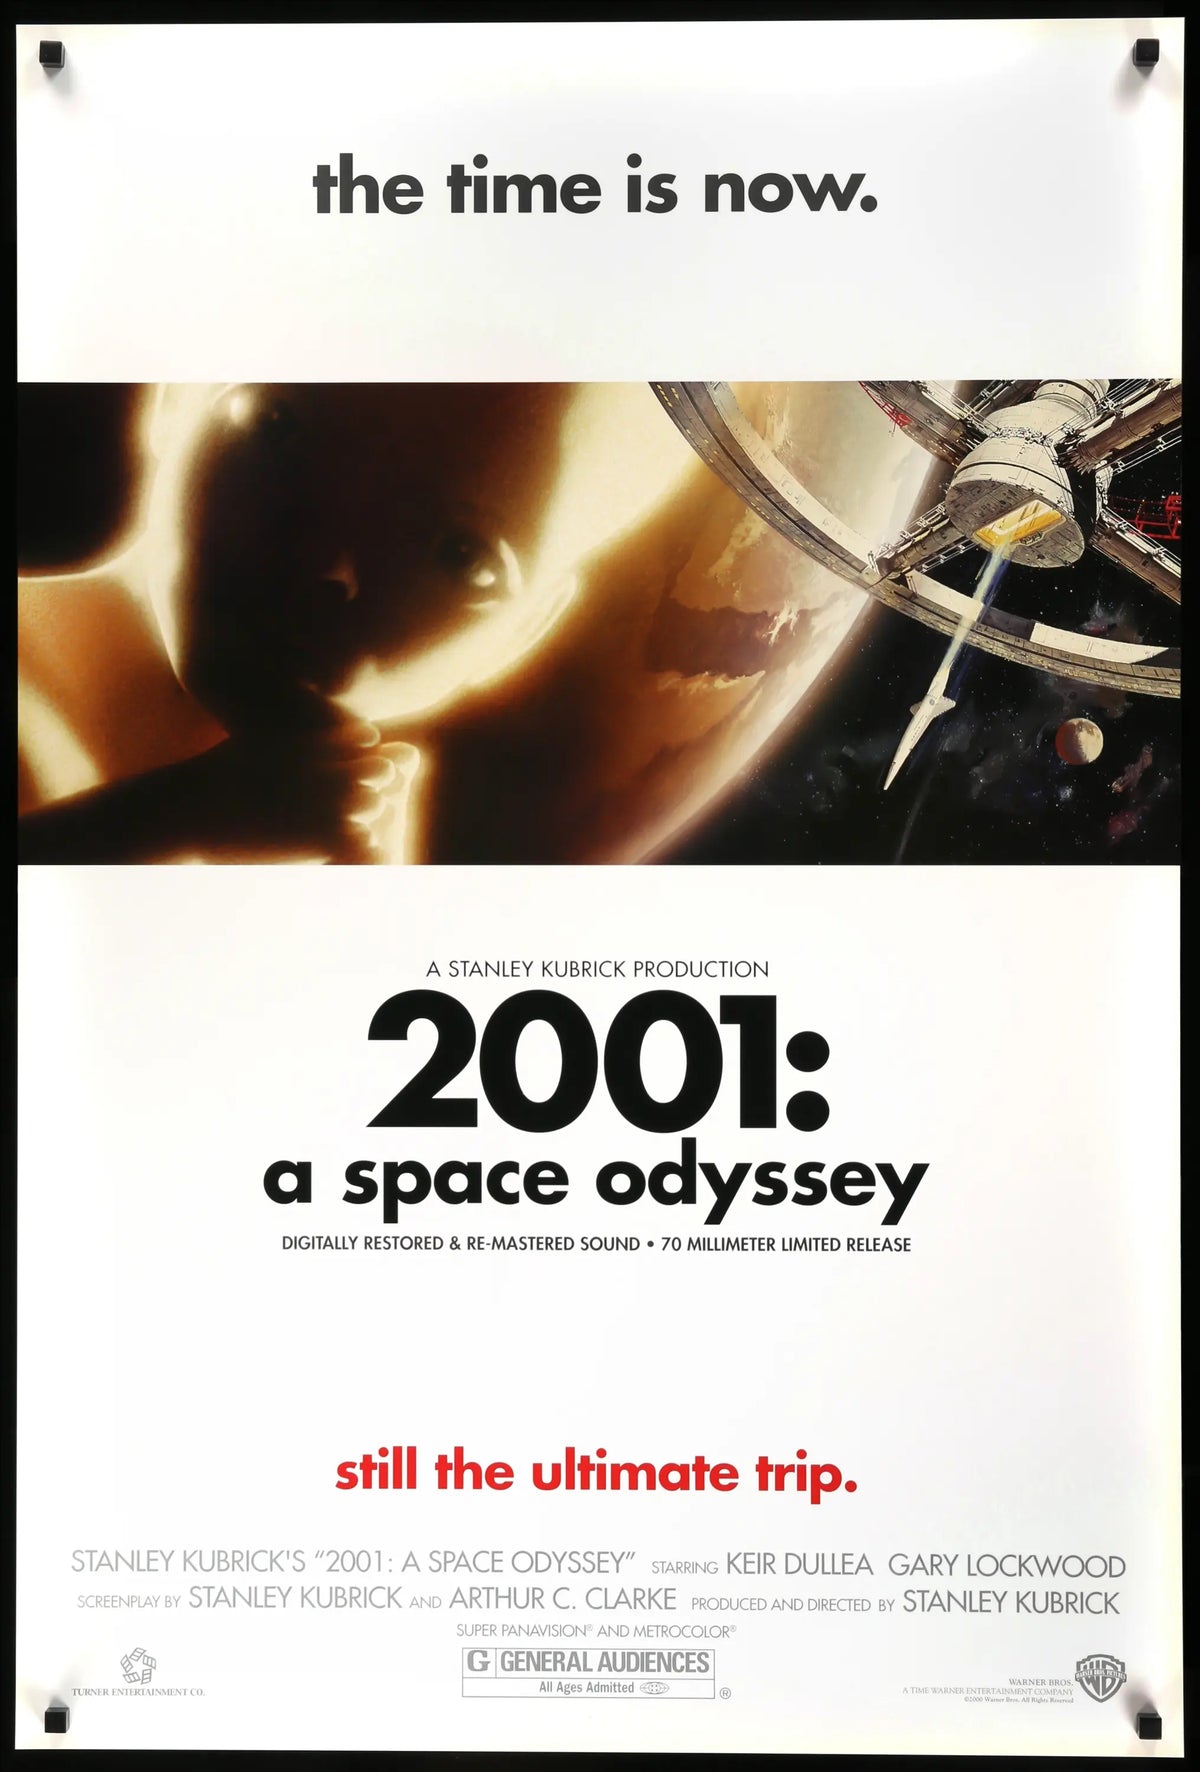 2001: A Space Odyssey (1968) original movie poster for sale at Original Film Art